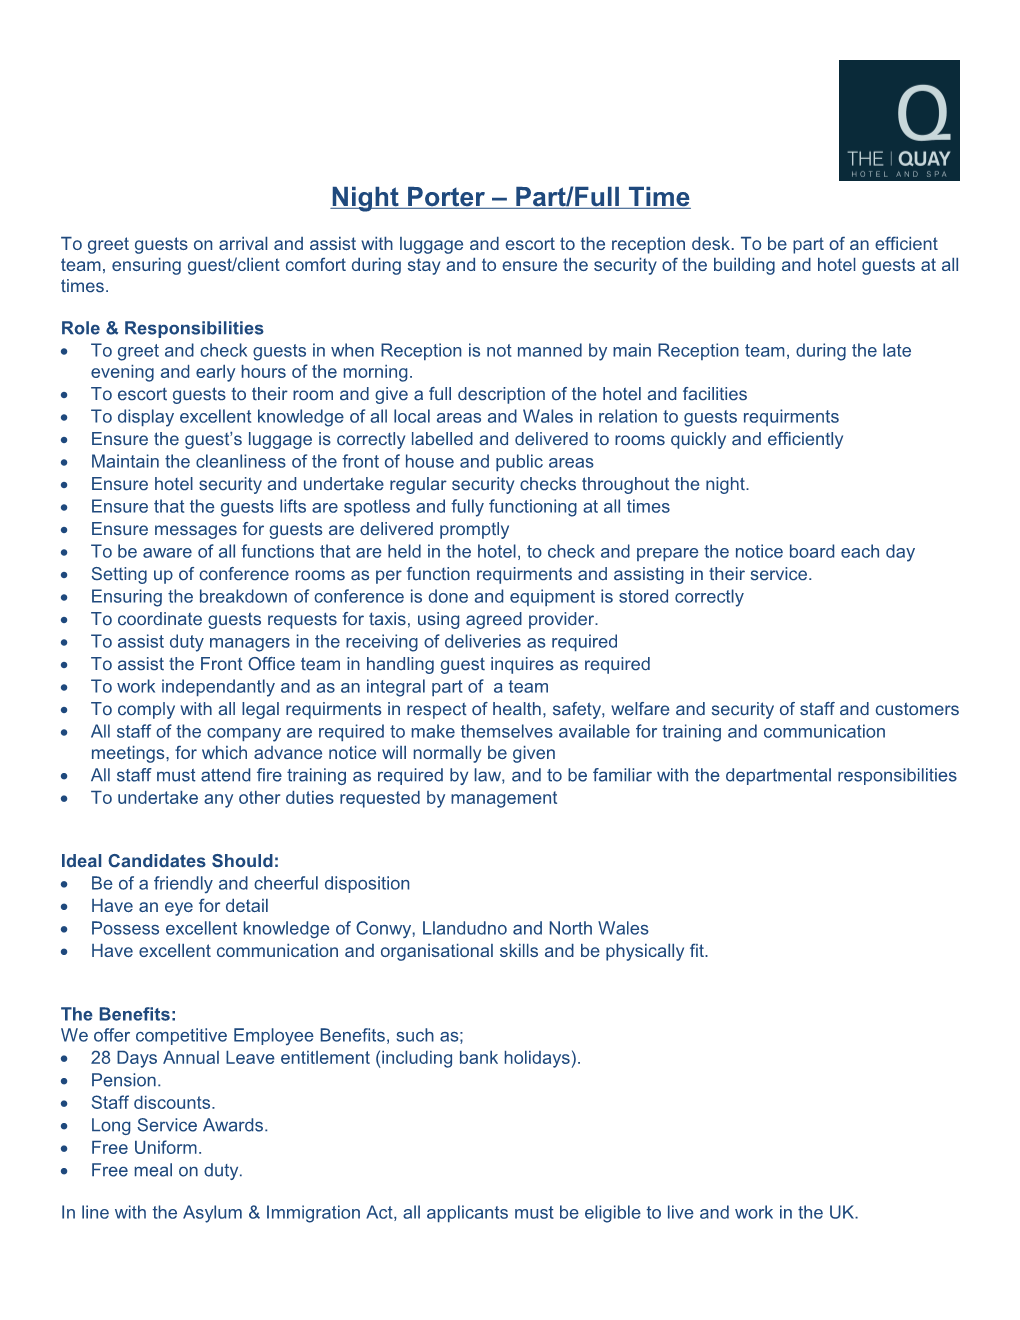 Night Porter Part/Full Time